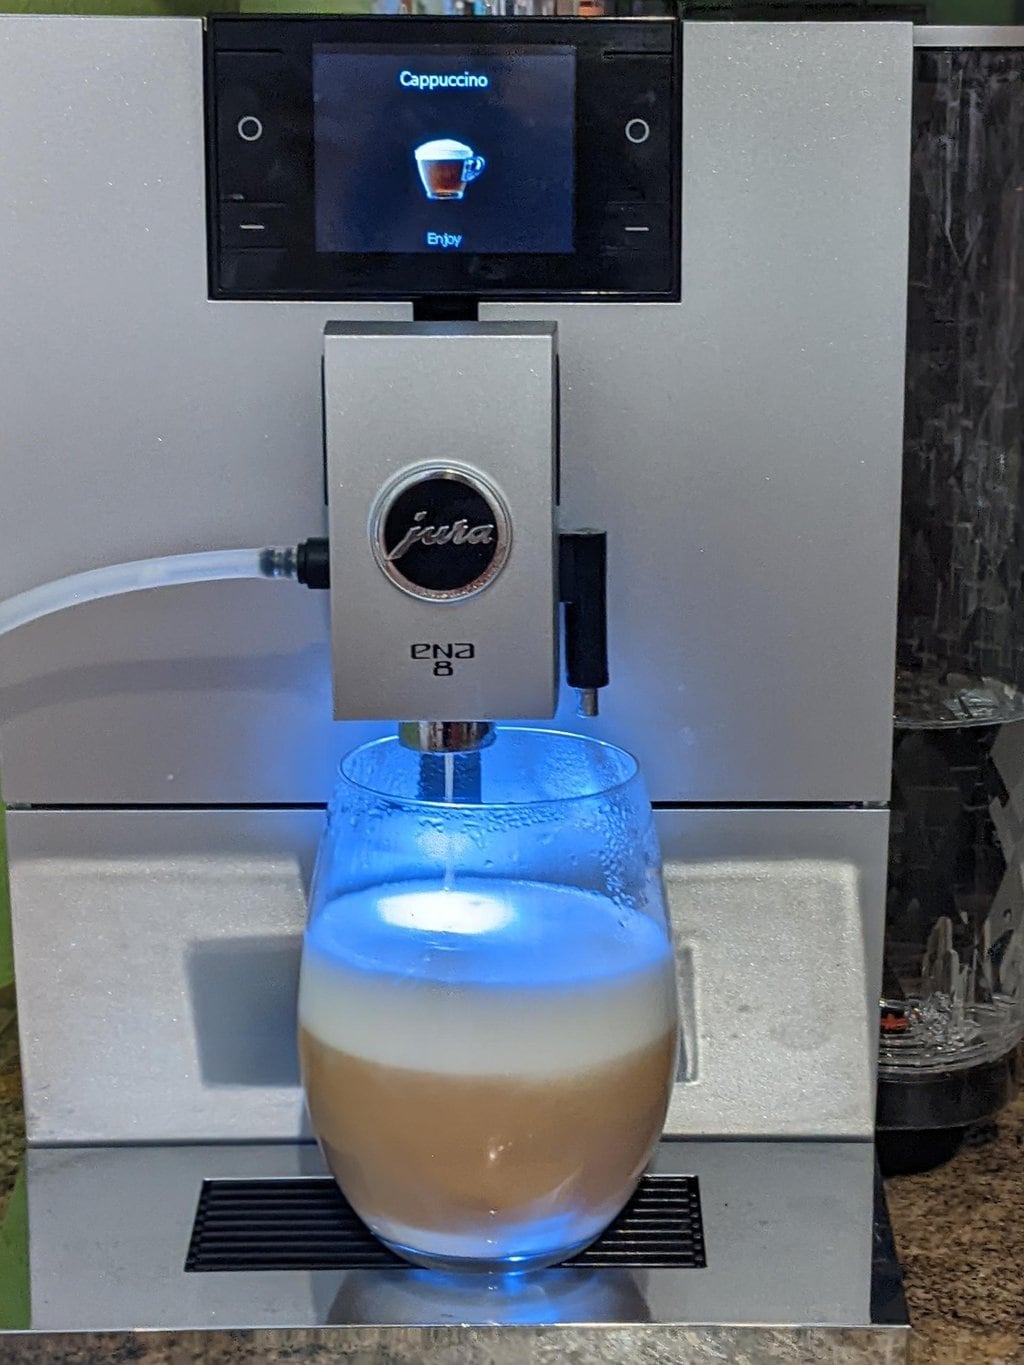 Jura ENA 8 espresso machine brews Cappuccino